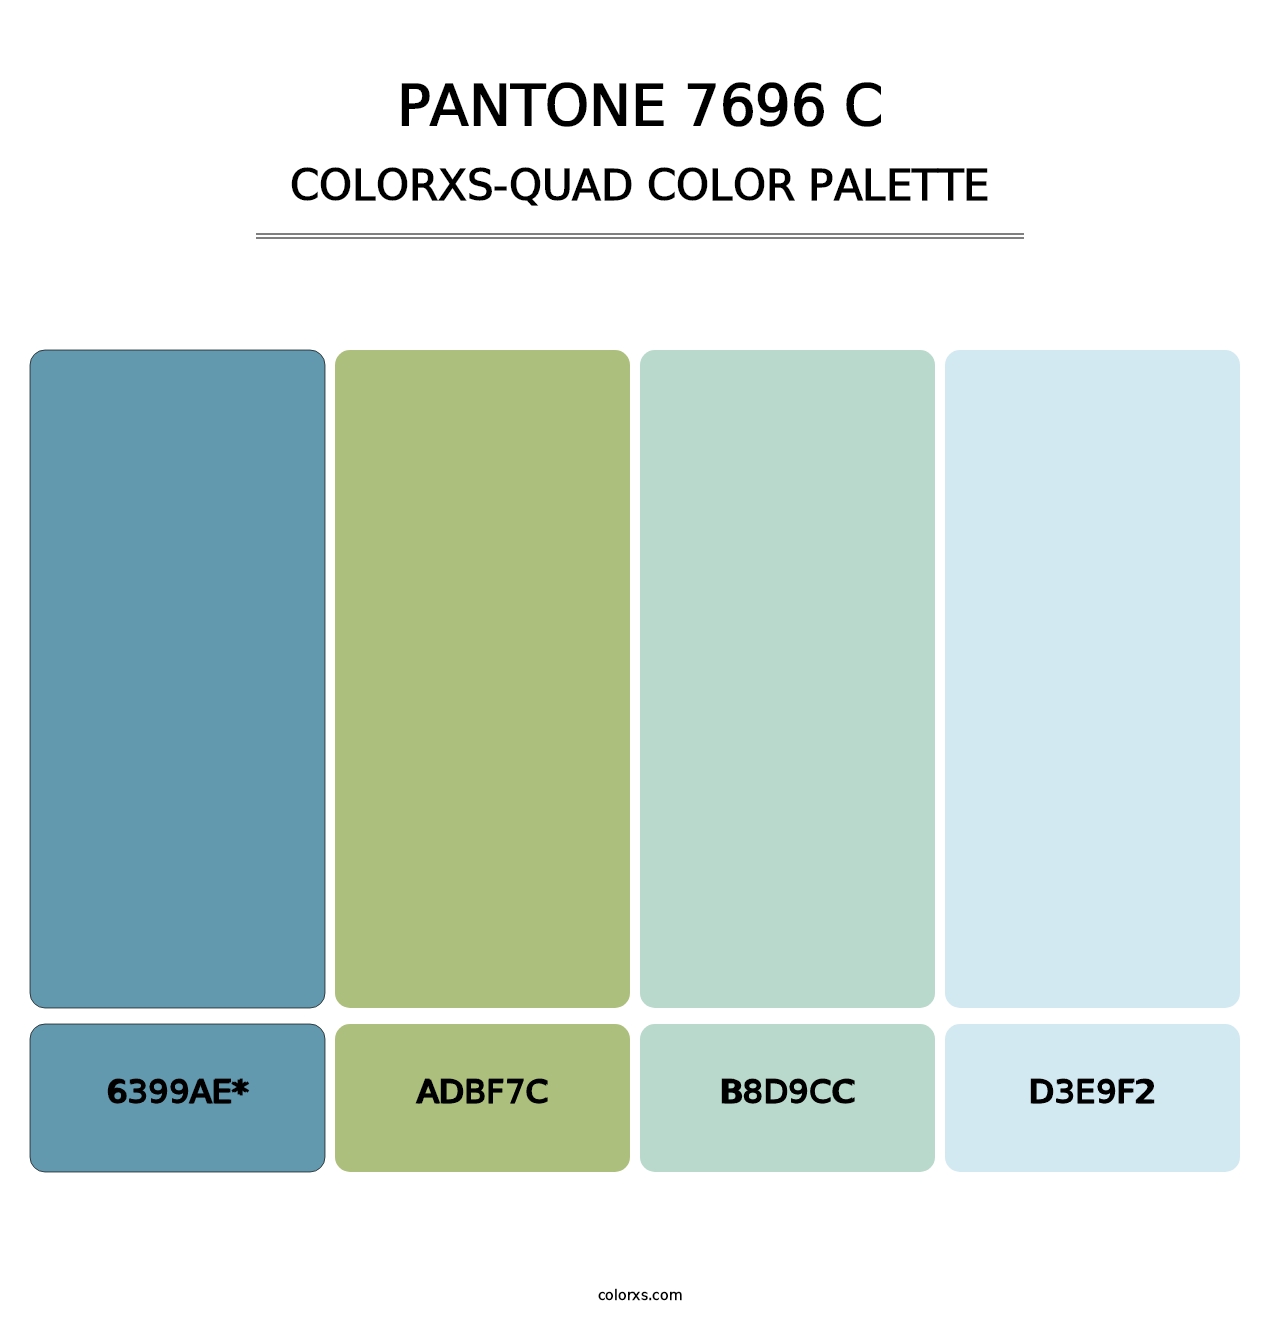 PANTONE 7696 C - Colorxs Quad Palette